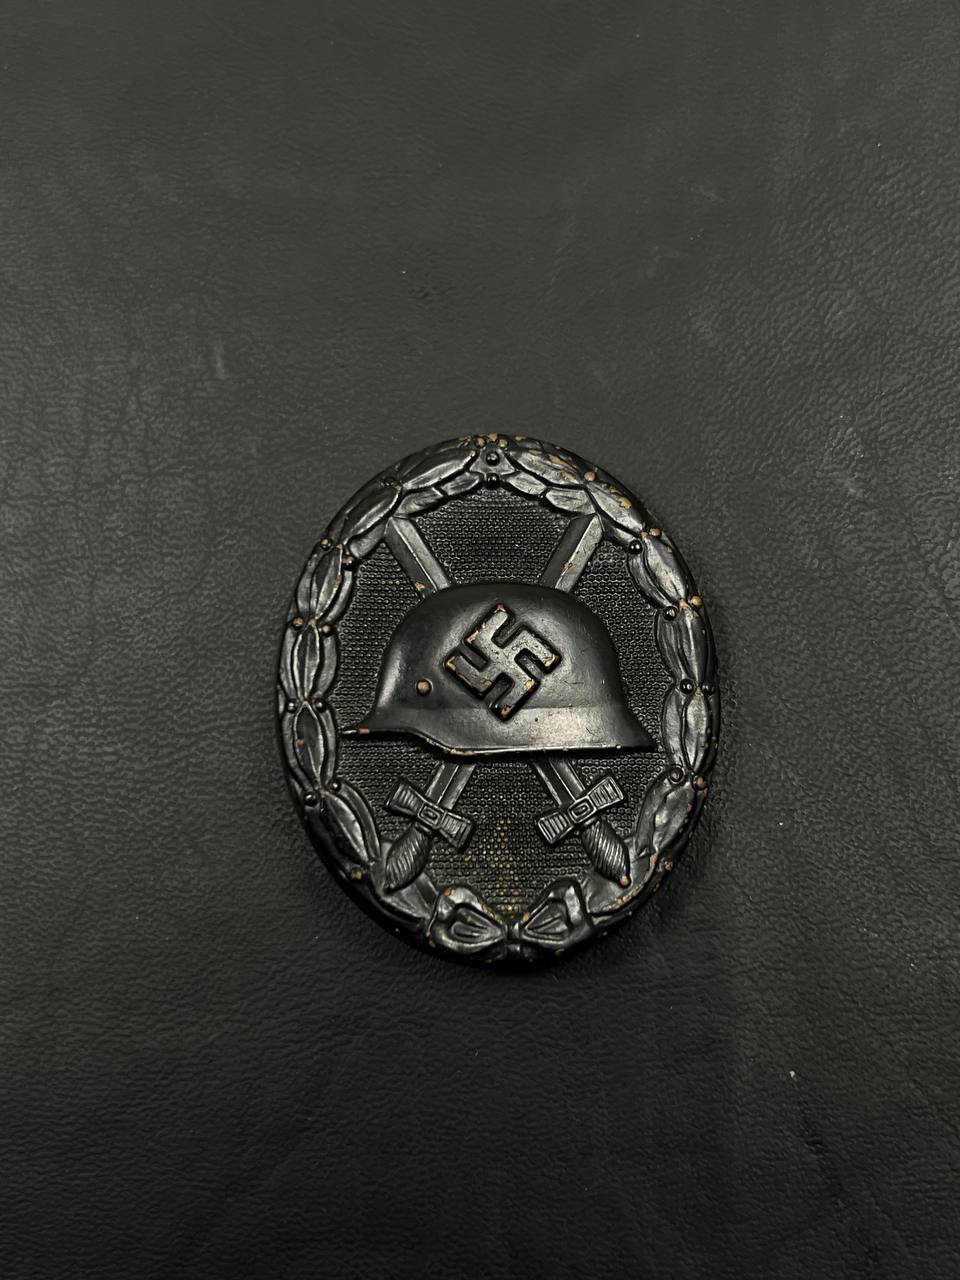 Знак за ранение в черном образца 1939 г. Латунь, клеймо “30” – производитель Hauptmünzamt, Wien. От Алексея С.